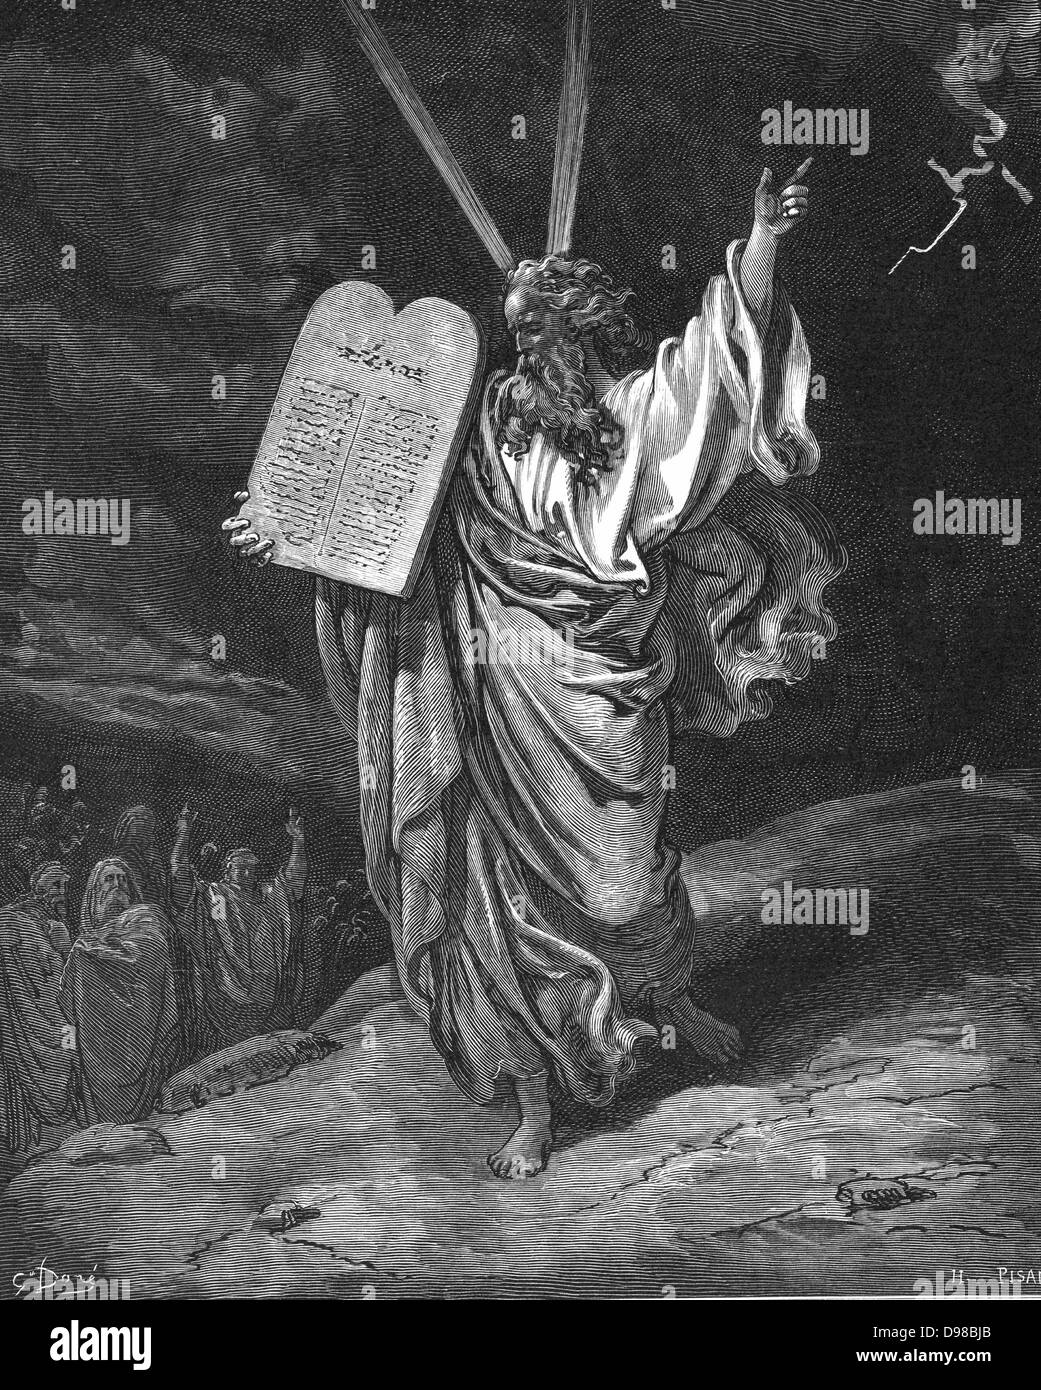 Moses vom Berg Sinai mit den Gesetzestafeln (zehn Gebote) absteigend. Exodus 5,35. Illustration von Gustave Dore (1832-1883) für "Die Bibel" (London 1866). Holzstich. Stockfoto